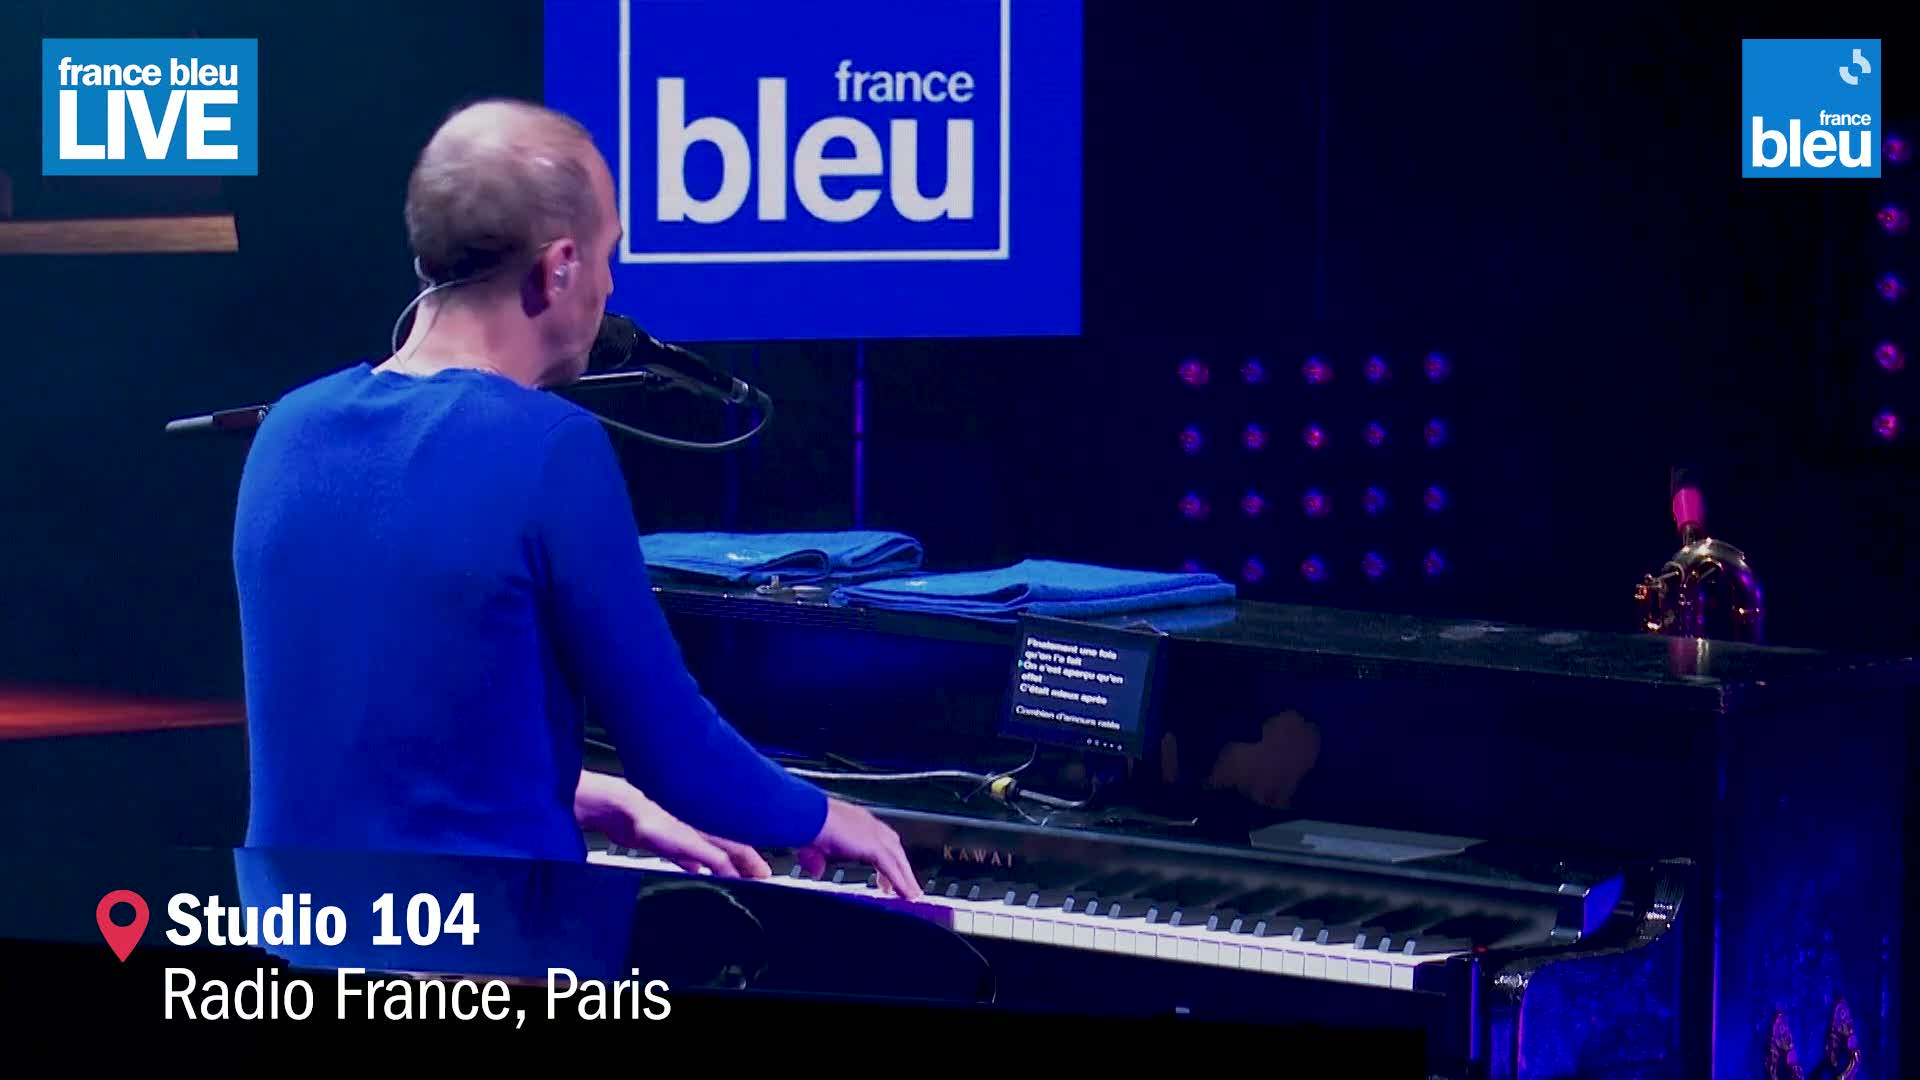 Media Calogero France Bleu Live